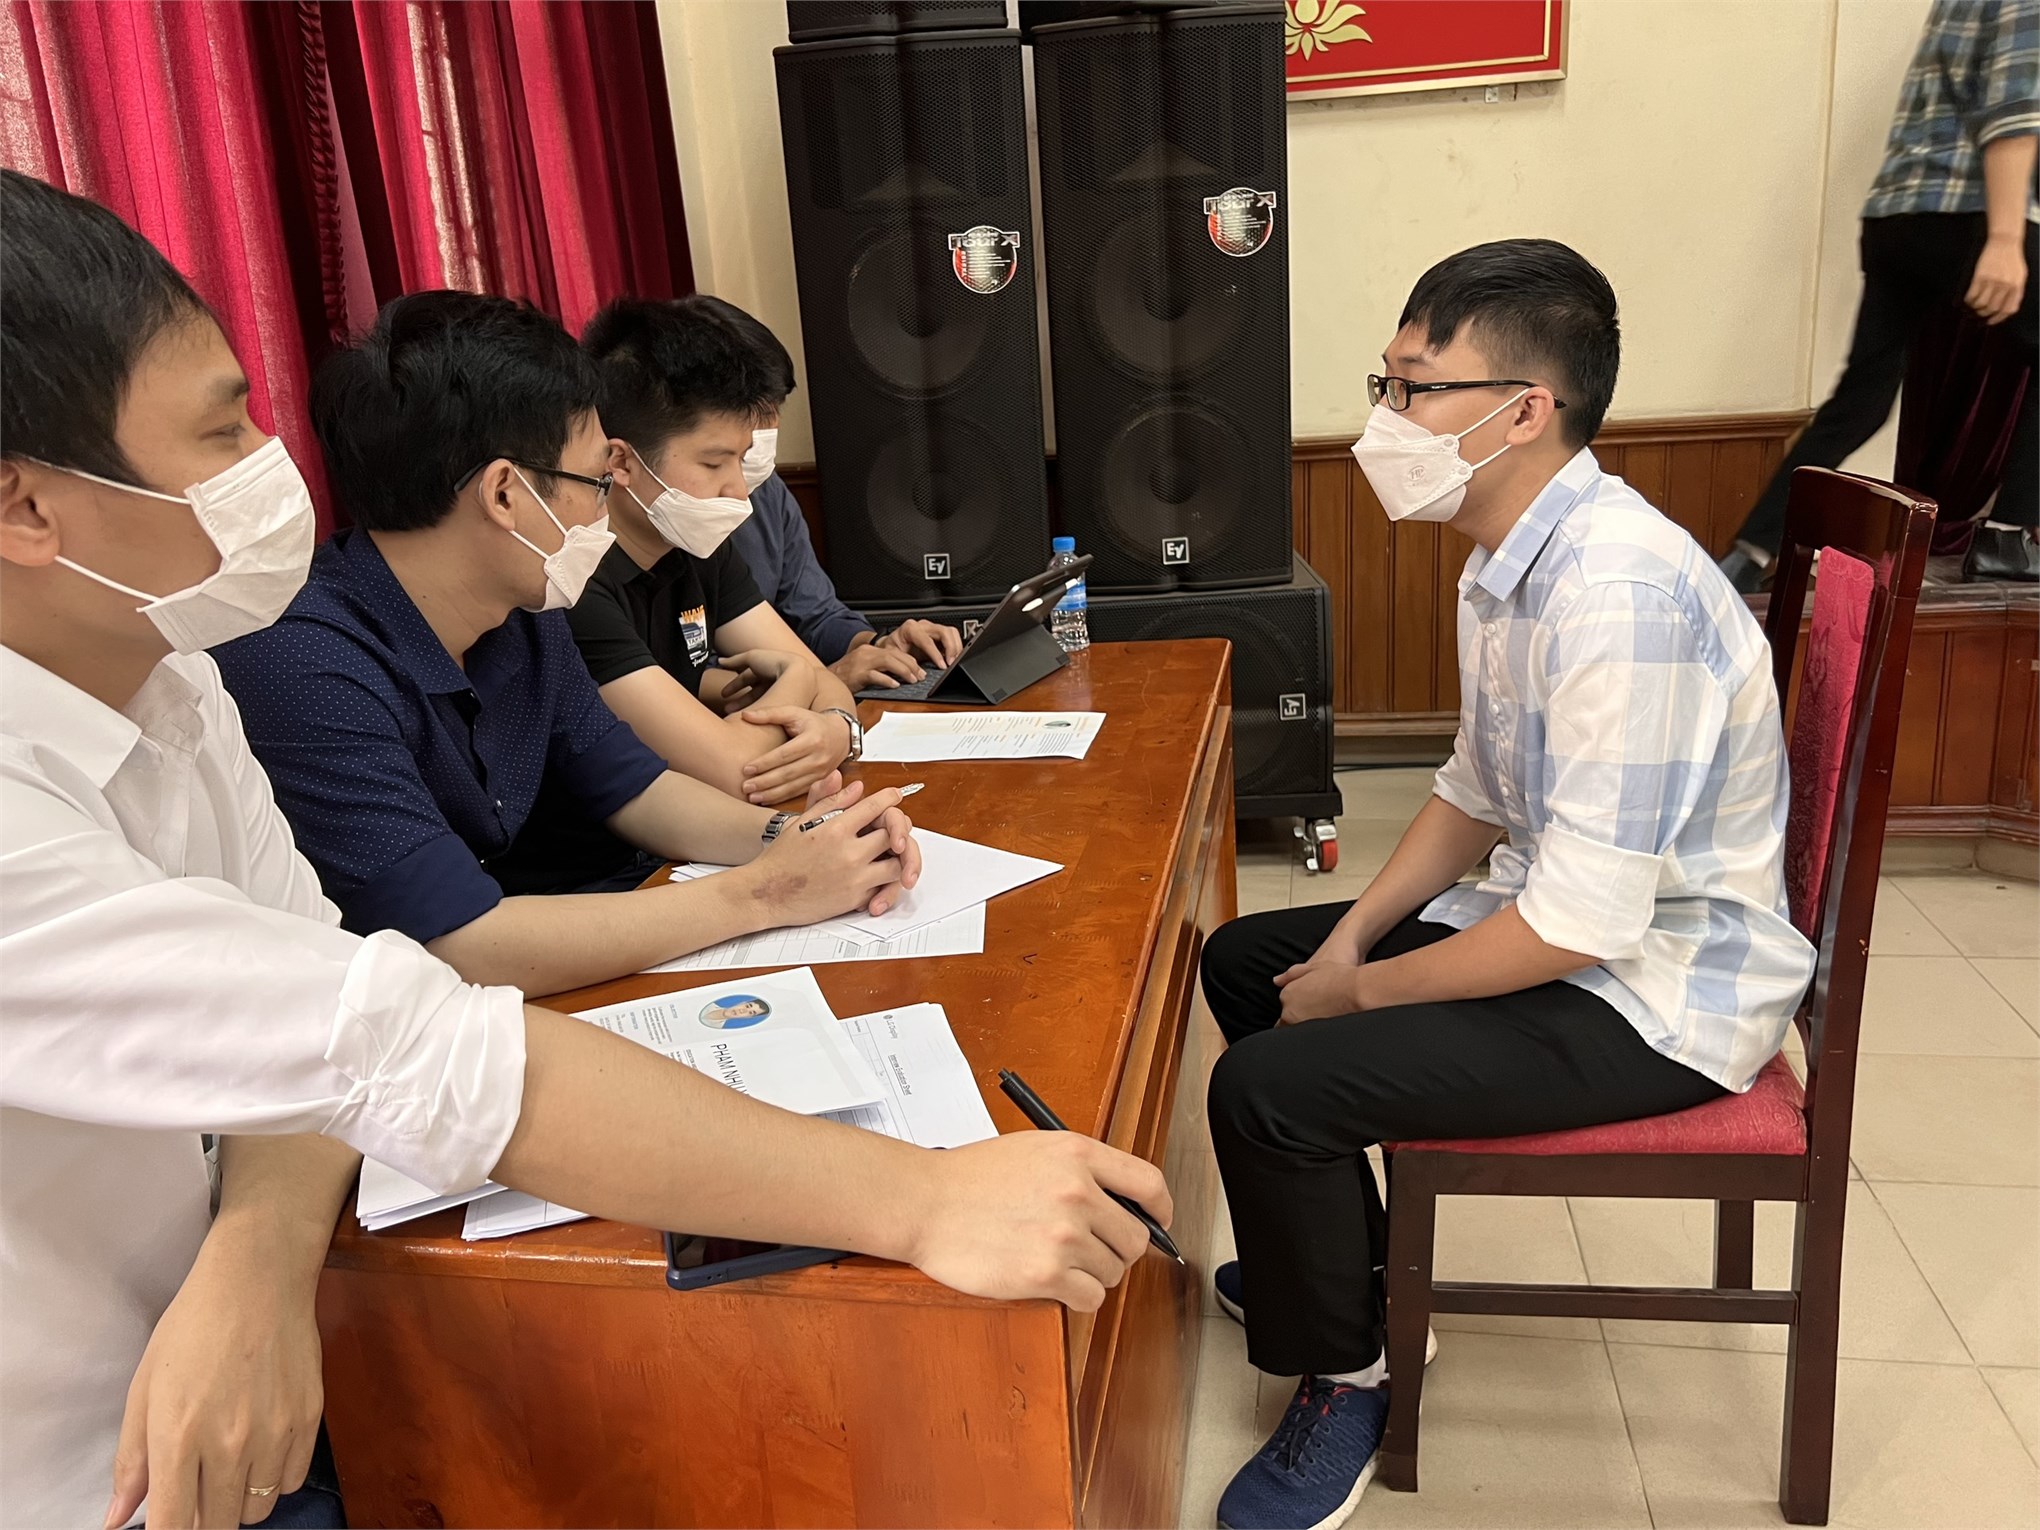 Cơ hội việc làm và tuyển dụng trực tiếp dành cho sinh viên tại Đại học Công nghiệp Hà Nội